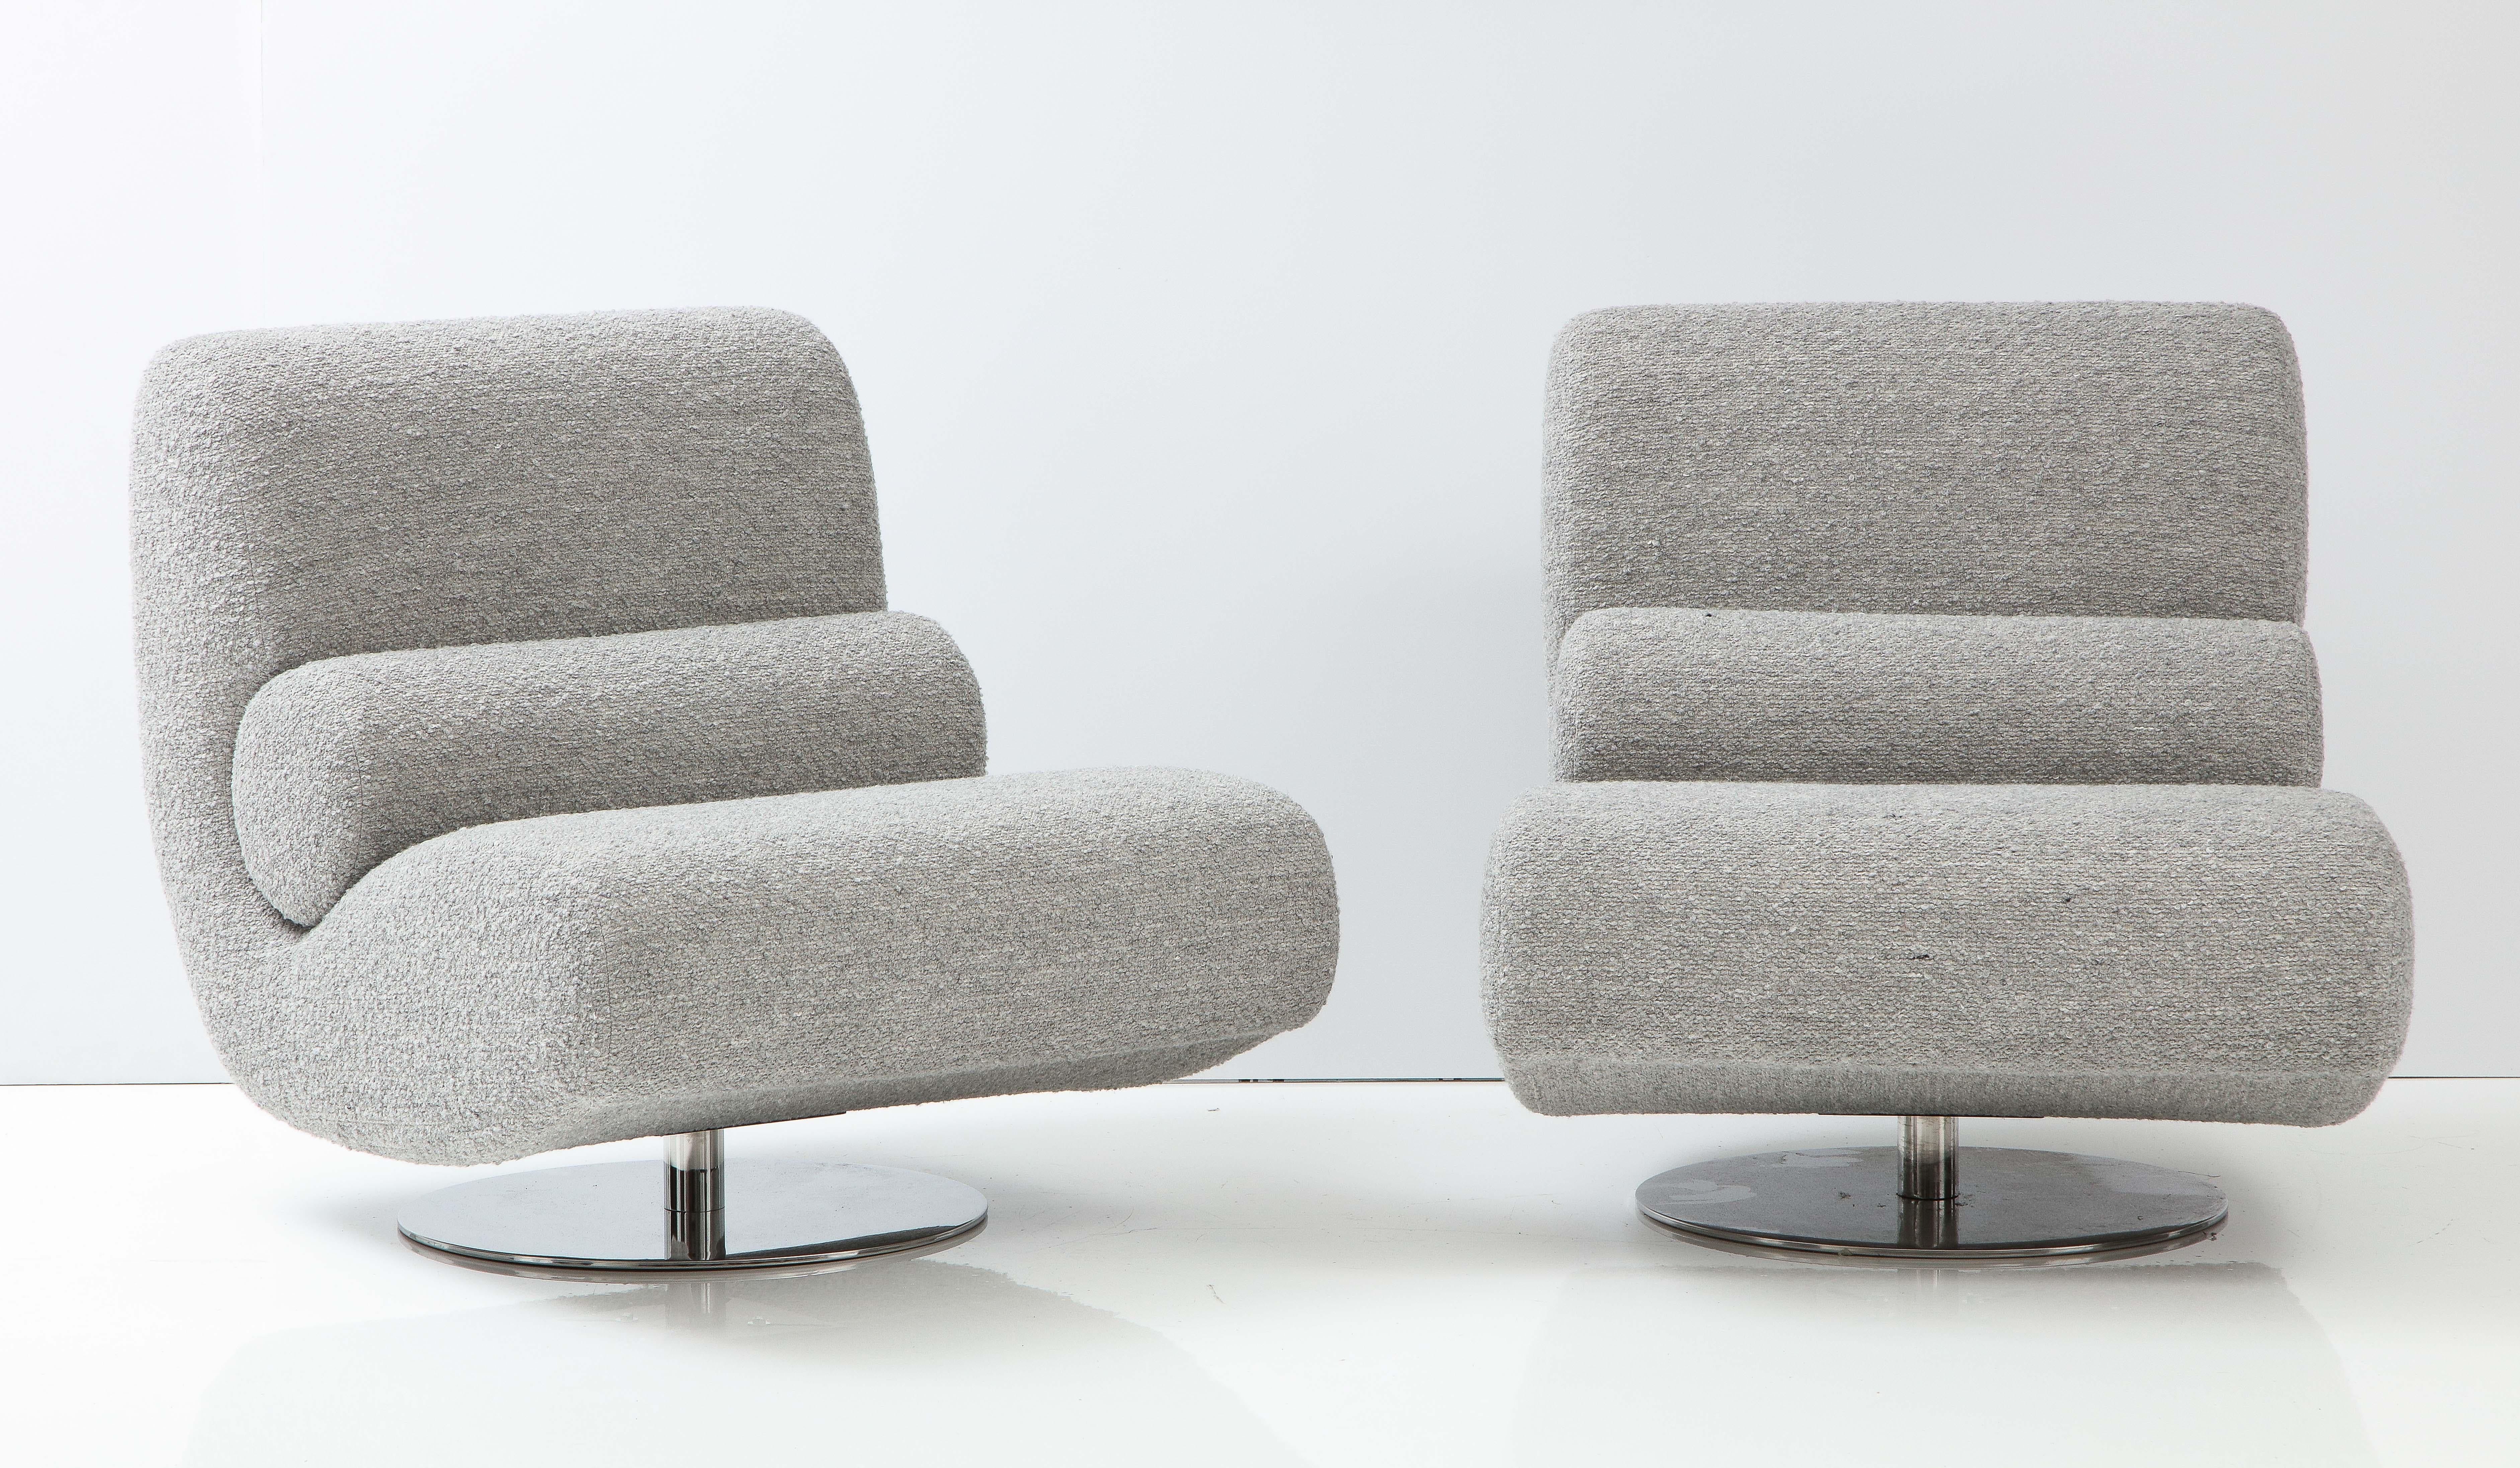 Impressionnante paire de chaises longues pivotantes en bouclé gris, fabriquées sur mesure à Florence, en Italie. Un artisanat et des lignes de conception superbes. Ces chaises de salon larges et spacieuses sont extrêmement confortables et reposent